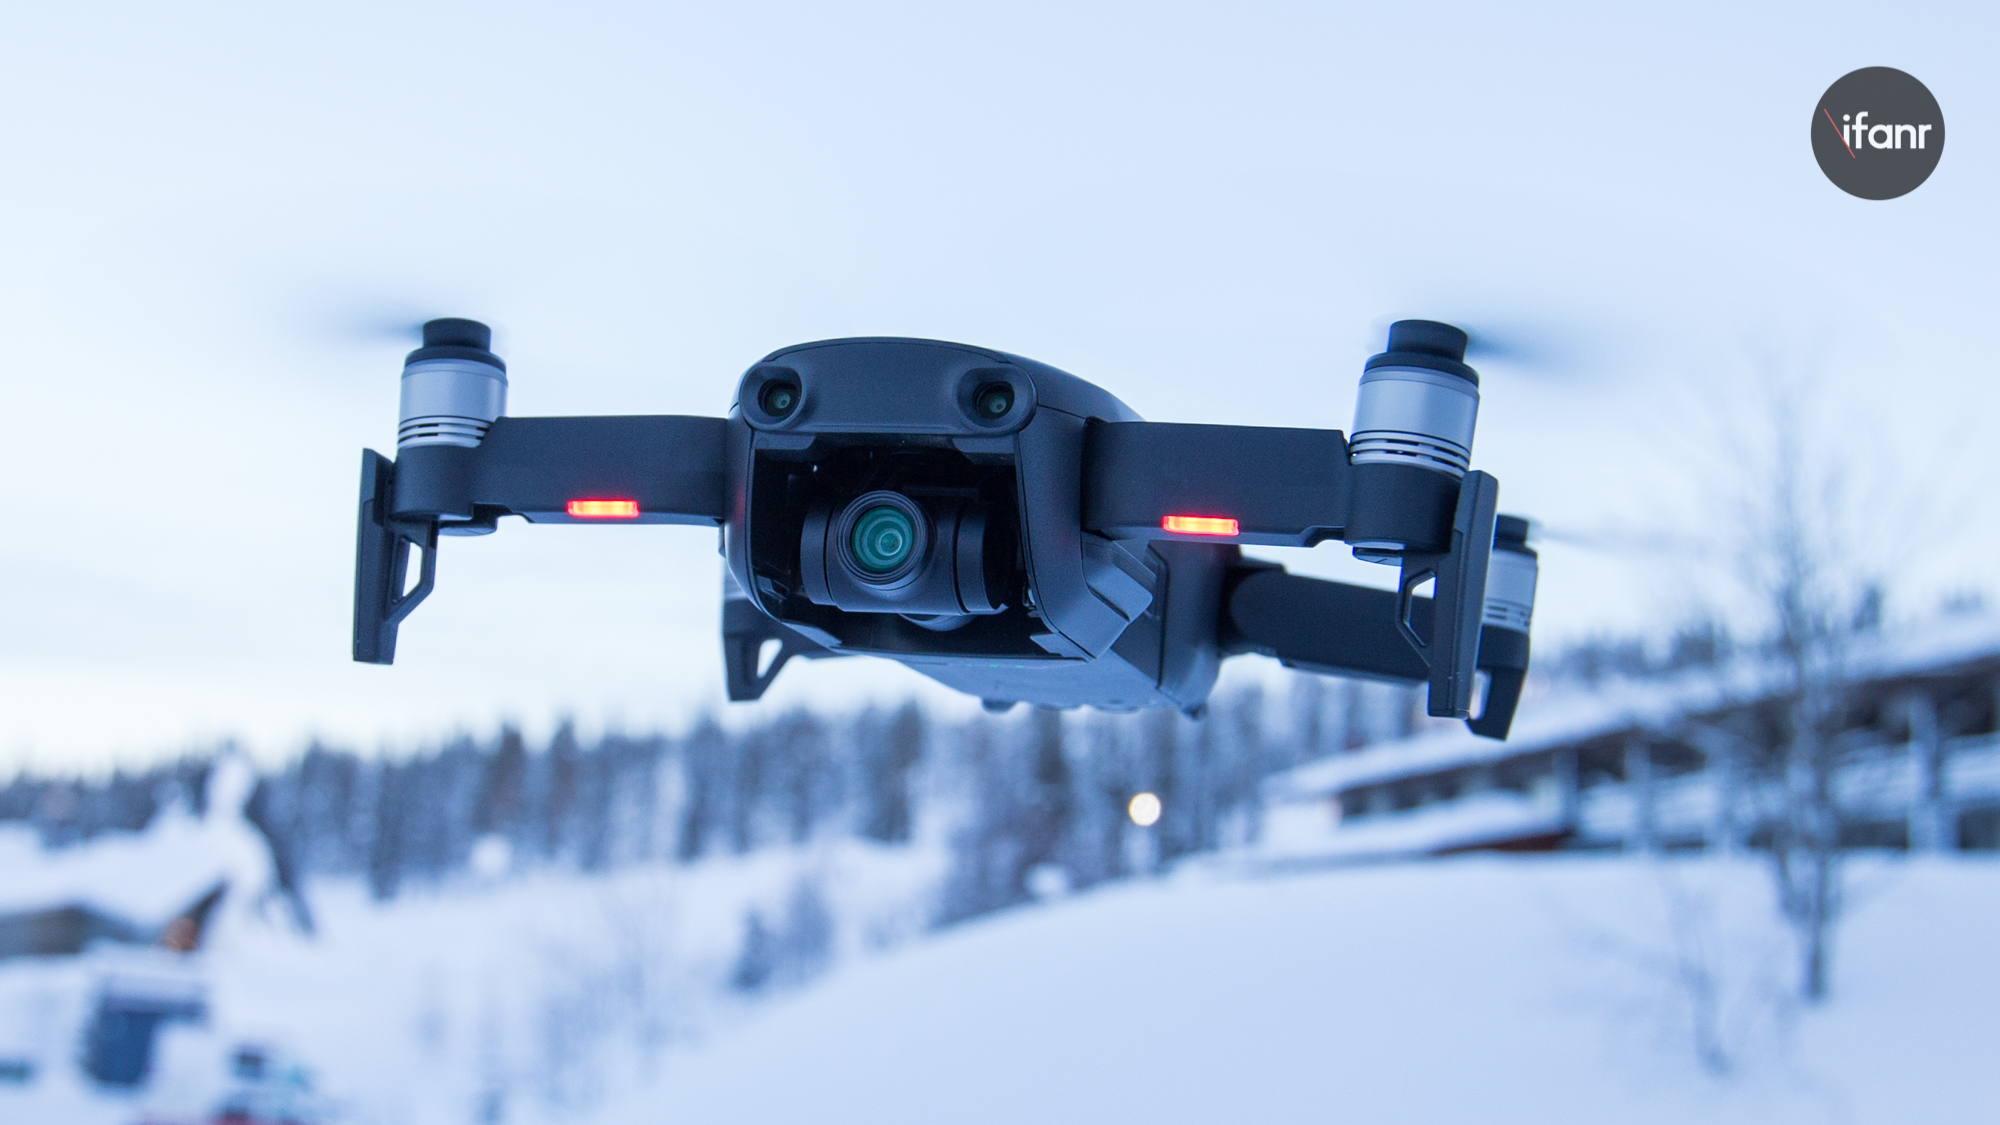 全球创新飞行影像系统领导者DJI 大疆创新携旗下无人机系统产品及解决方案亮相2019年莫斯科国际航空航天博览会。 - DJI 大疆创新